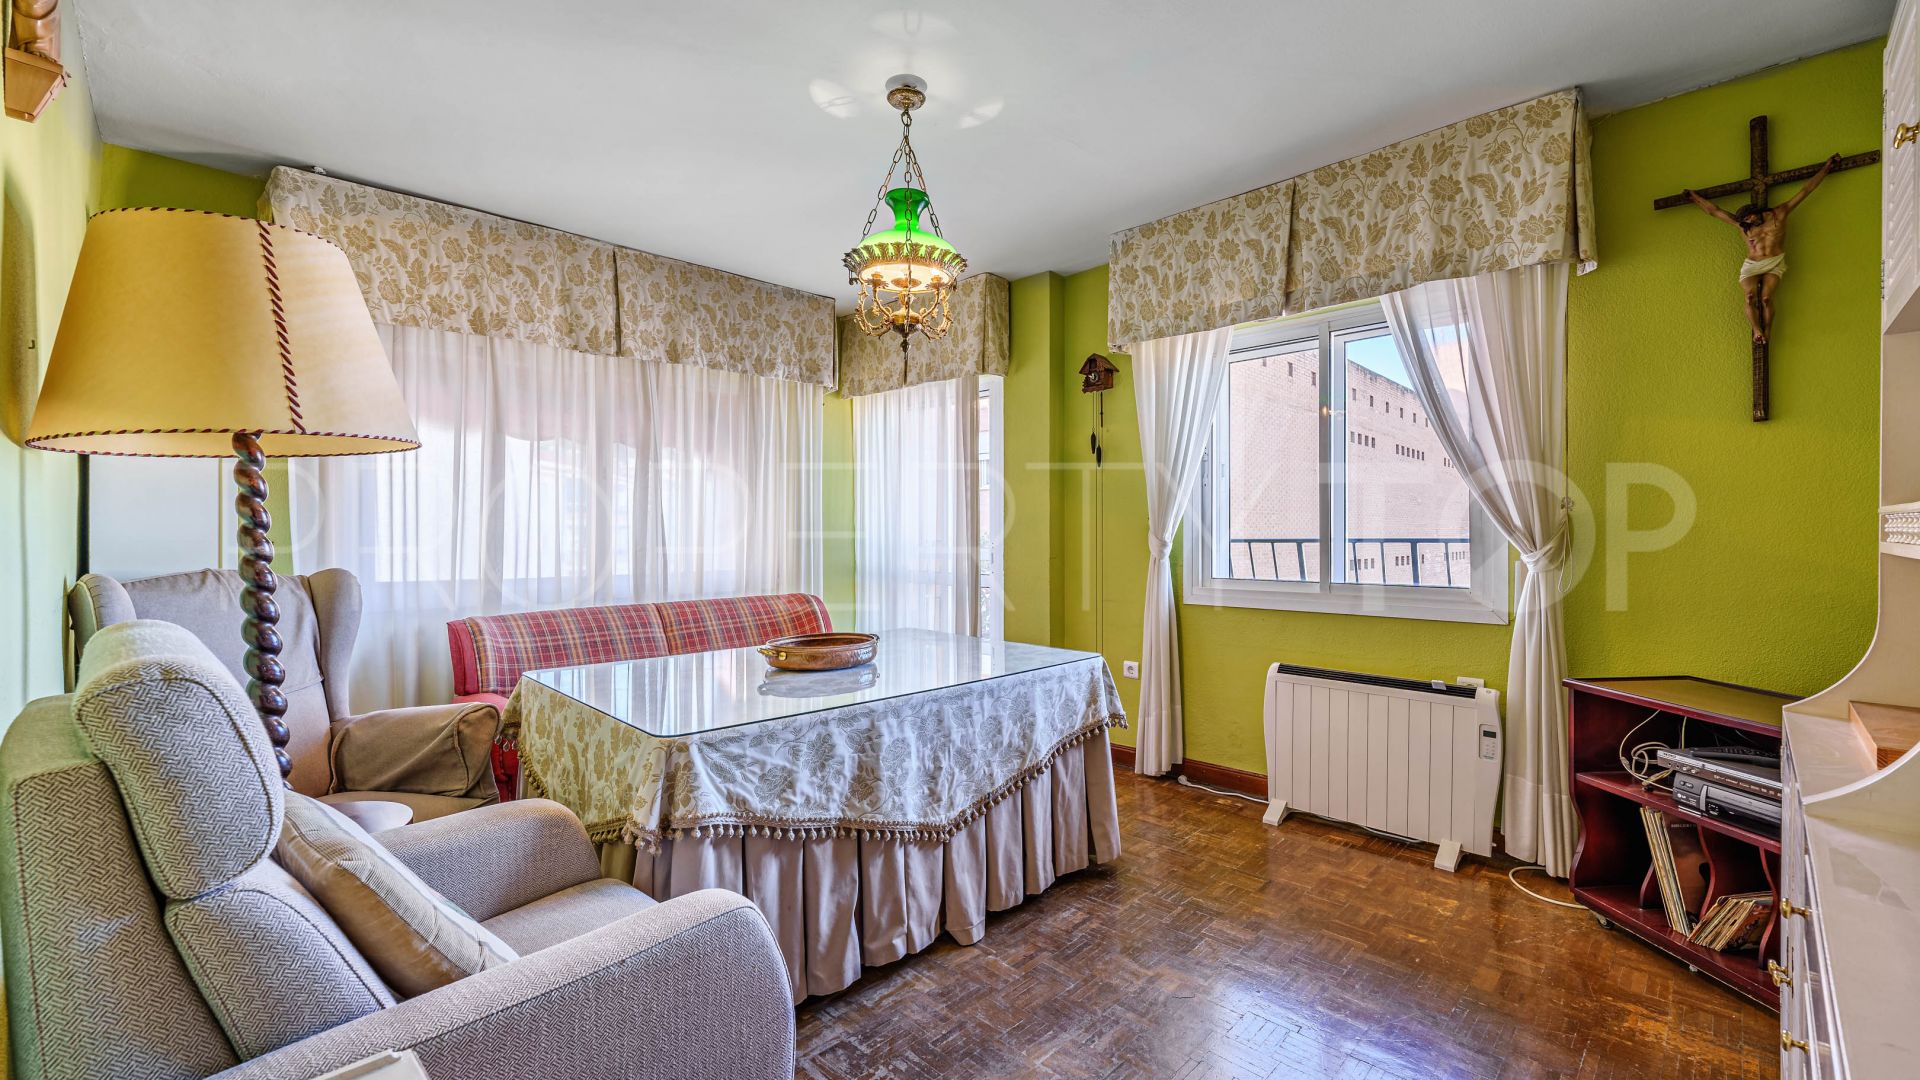 5 bedrooms apartment for sale in La Victoria - Conde de Ureña - Gibralfaro